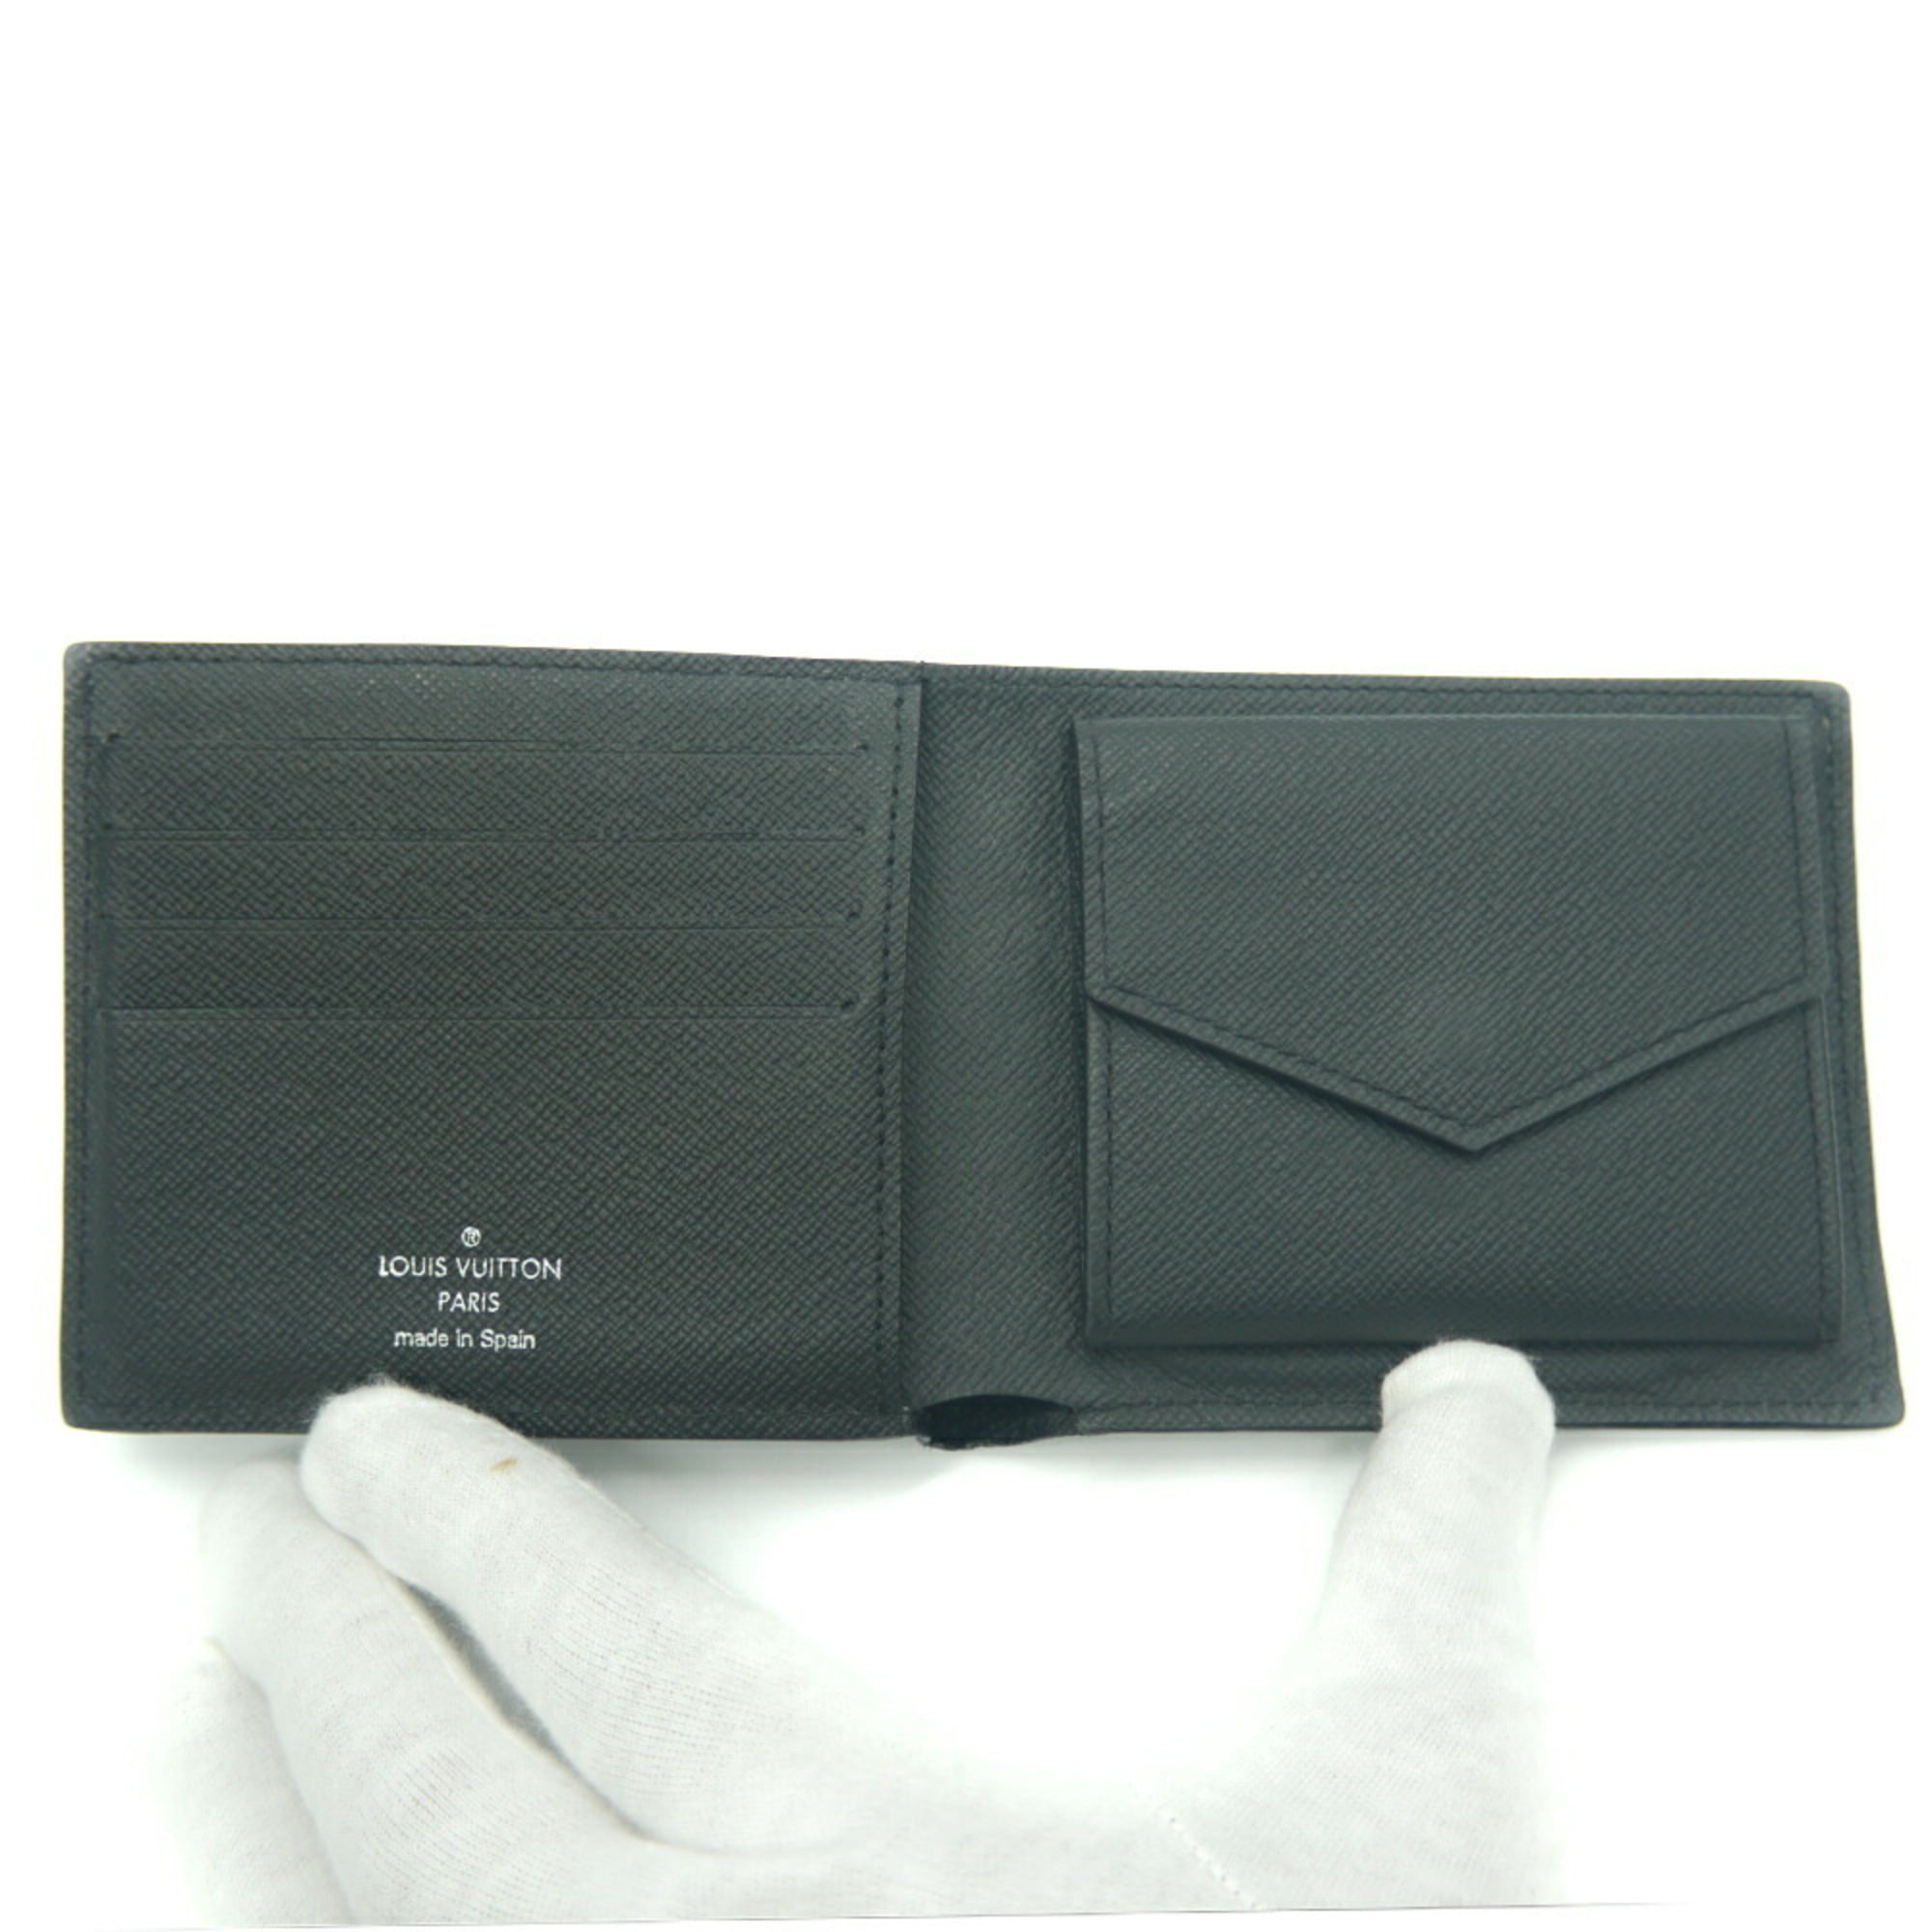 used Pre-owned Louis Vuitton Louis Vuitton Portefeuille Marco NM EPI Leather M62289 Bifold Wallet (Good), Women's, Size: (HxWxD): 9cm x 10cm x 2.5cm /